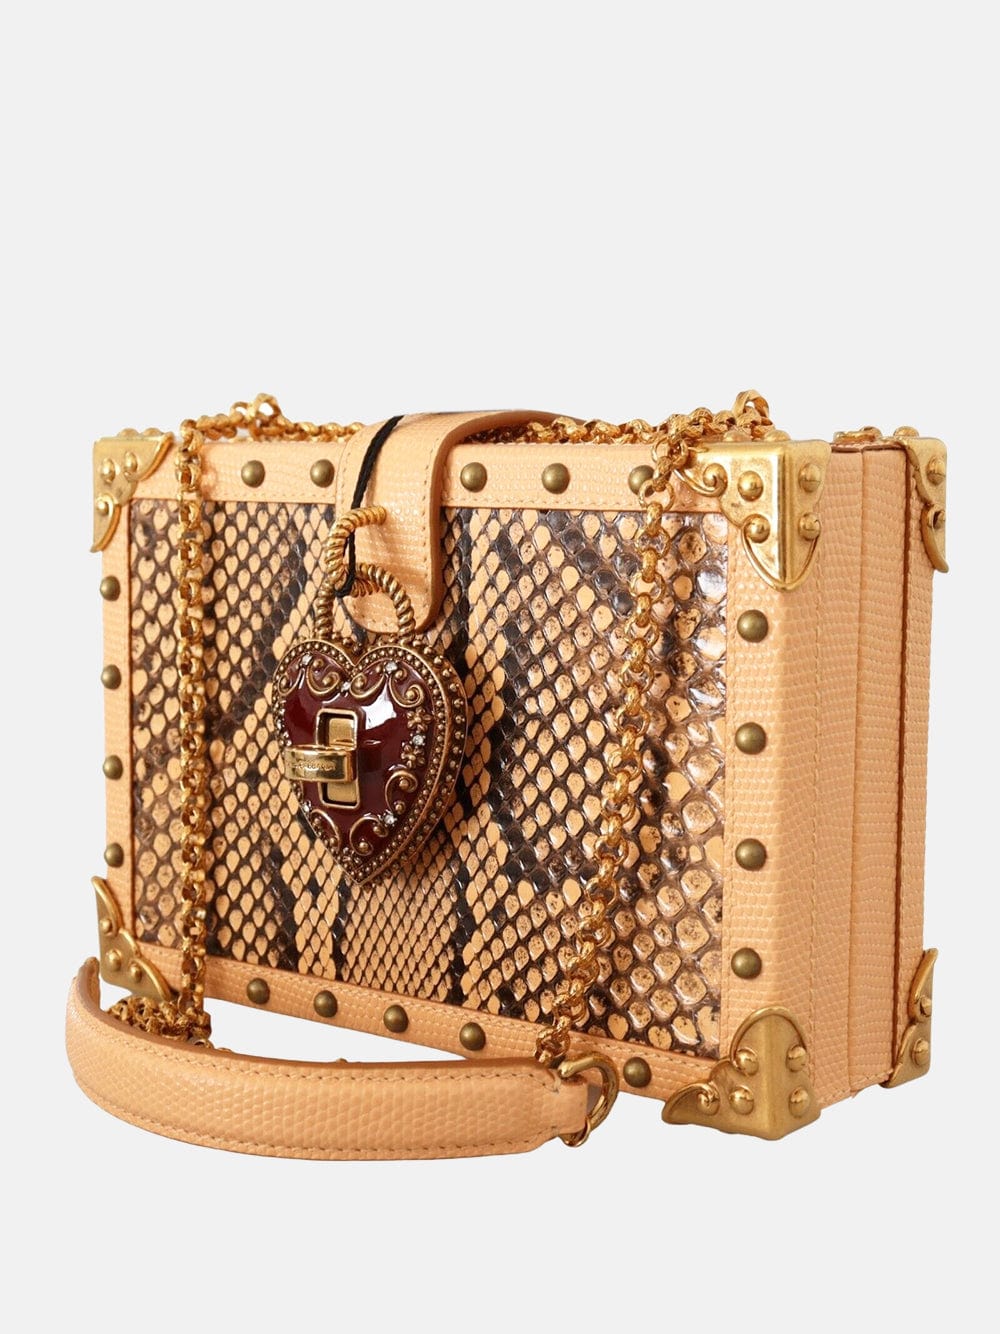 Dolce & Gabbana My Heart Dolce Box Bag